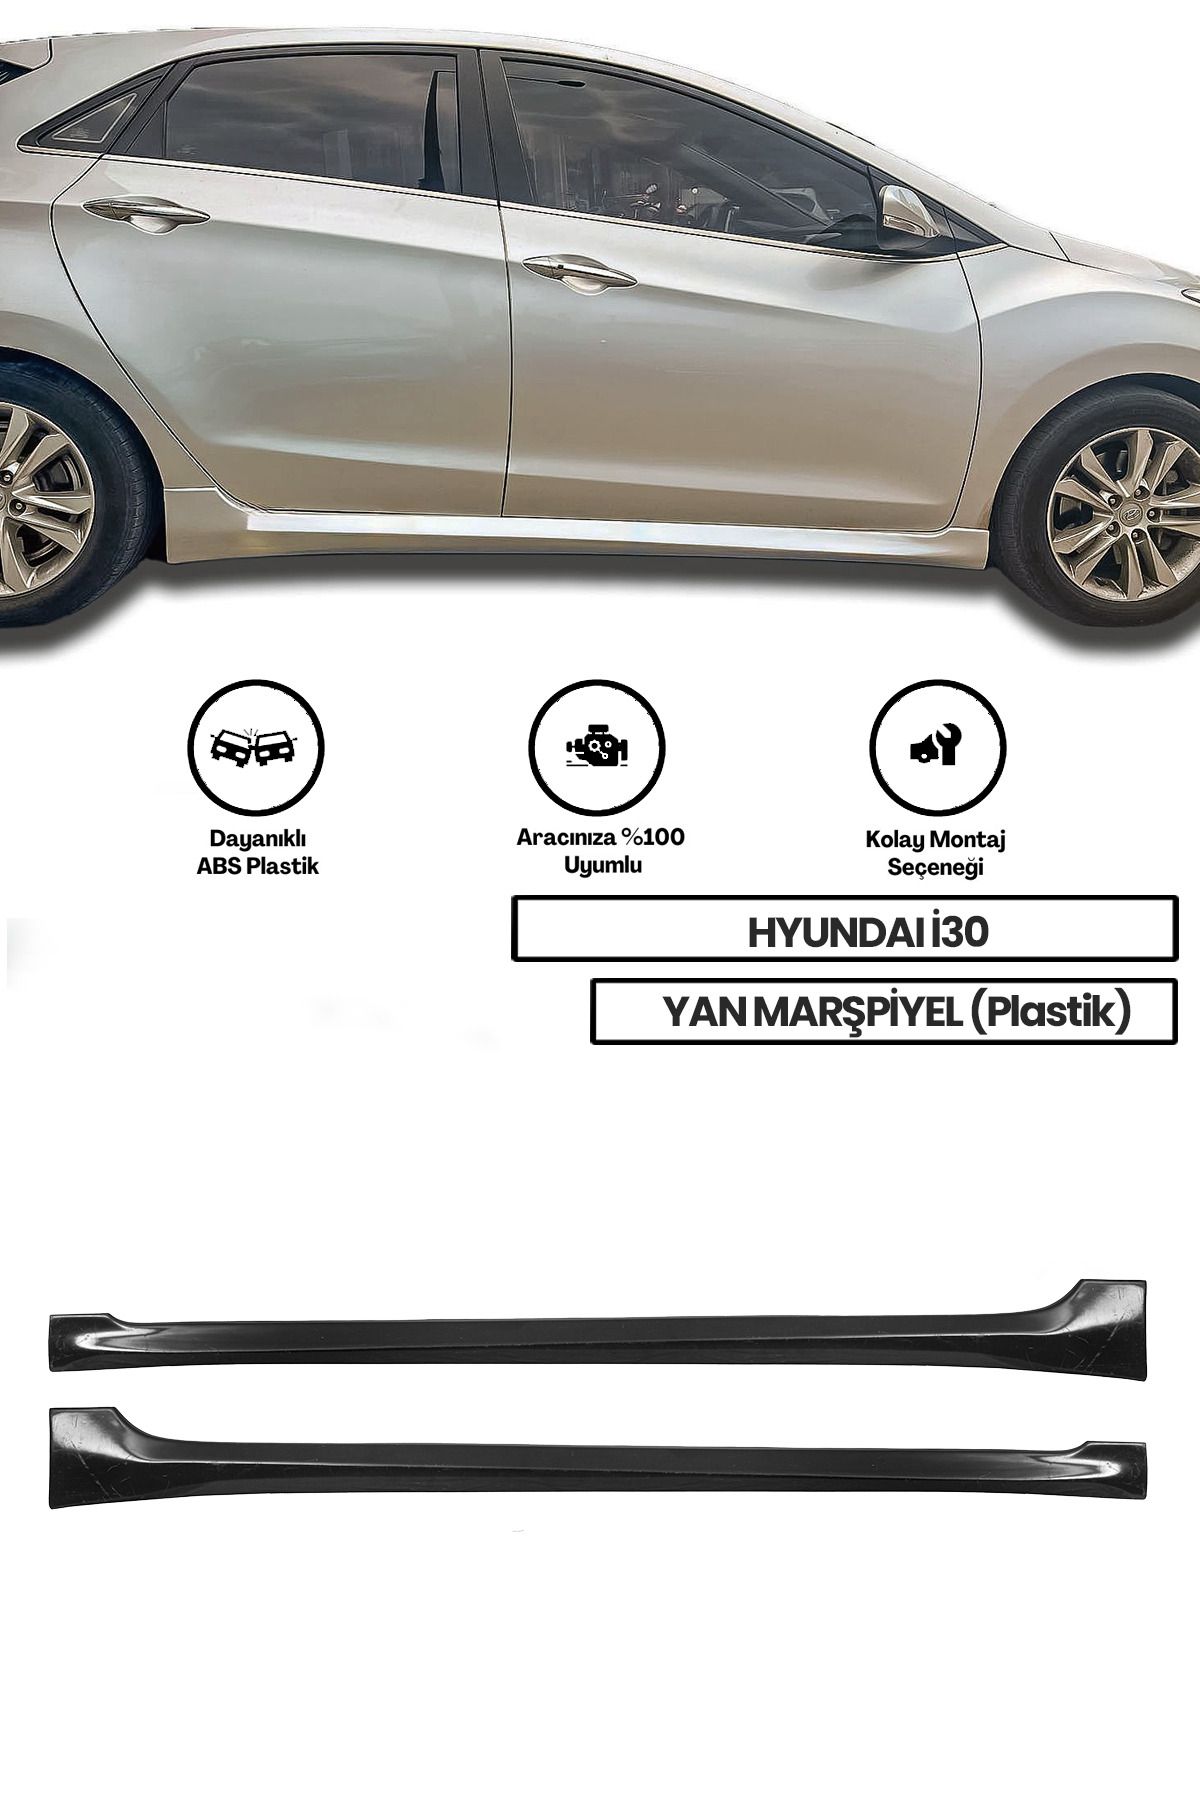 Hyundai I30 Yan Marşpiyel (ÇİFT) (PLASTİK)